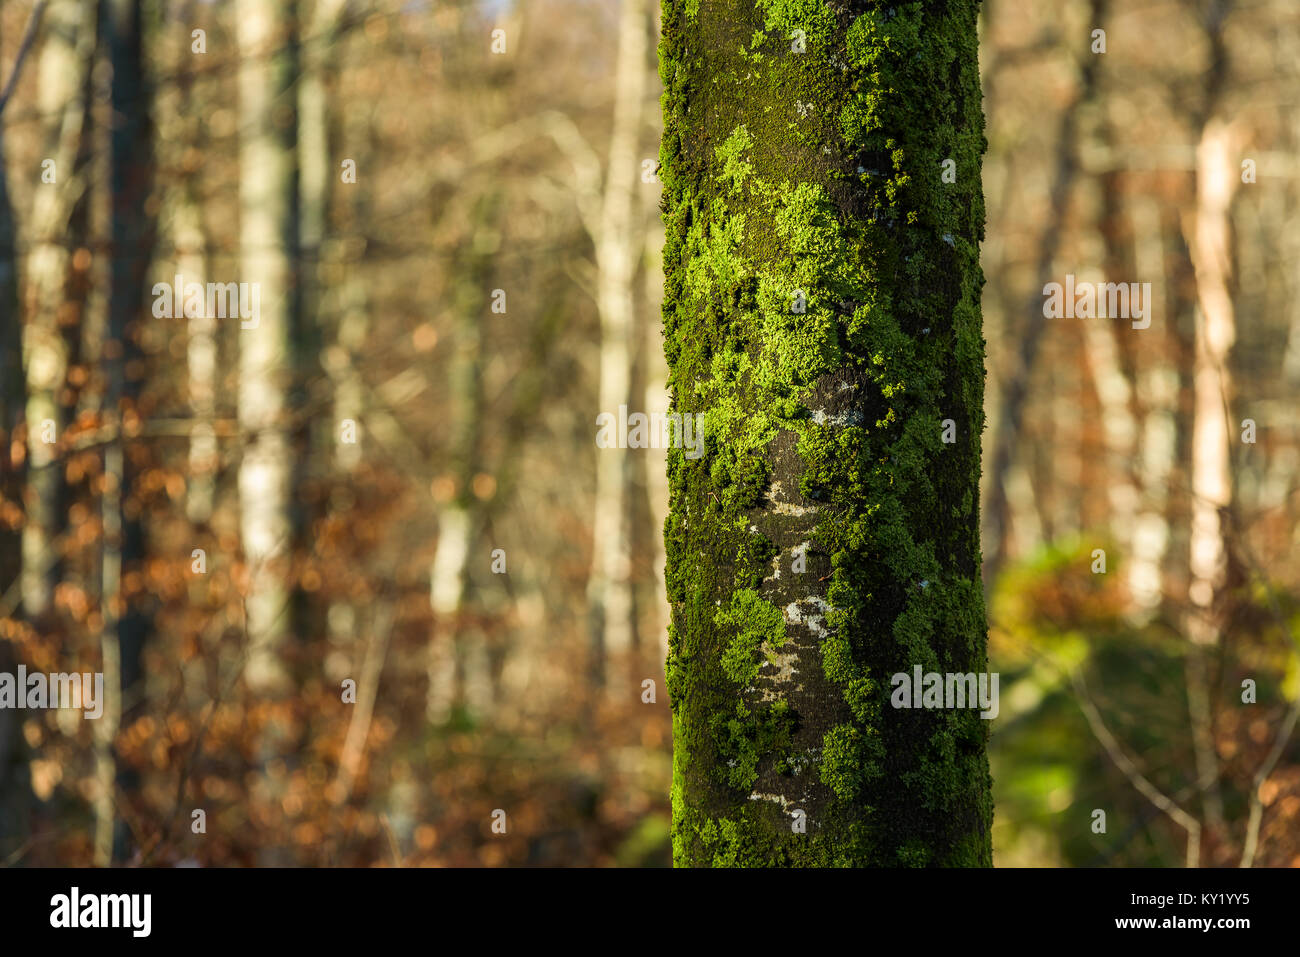 Grünen Flechten und Moos Cover eine Beech Tree Trunk. Bäume im Hintergrund fehlen den grünen Flechten. Stockfoto